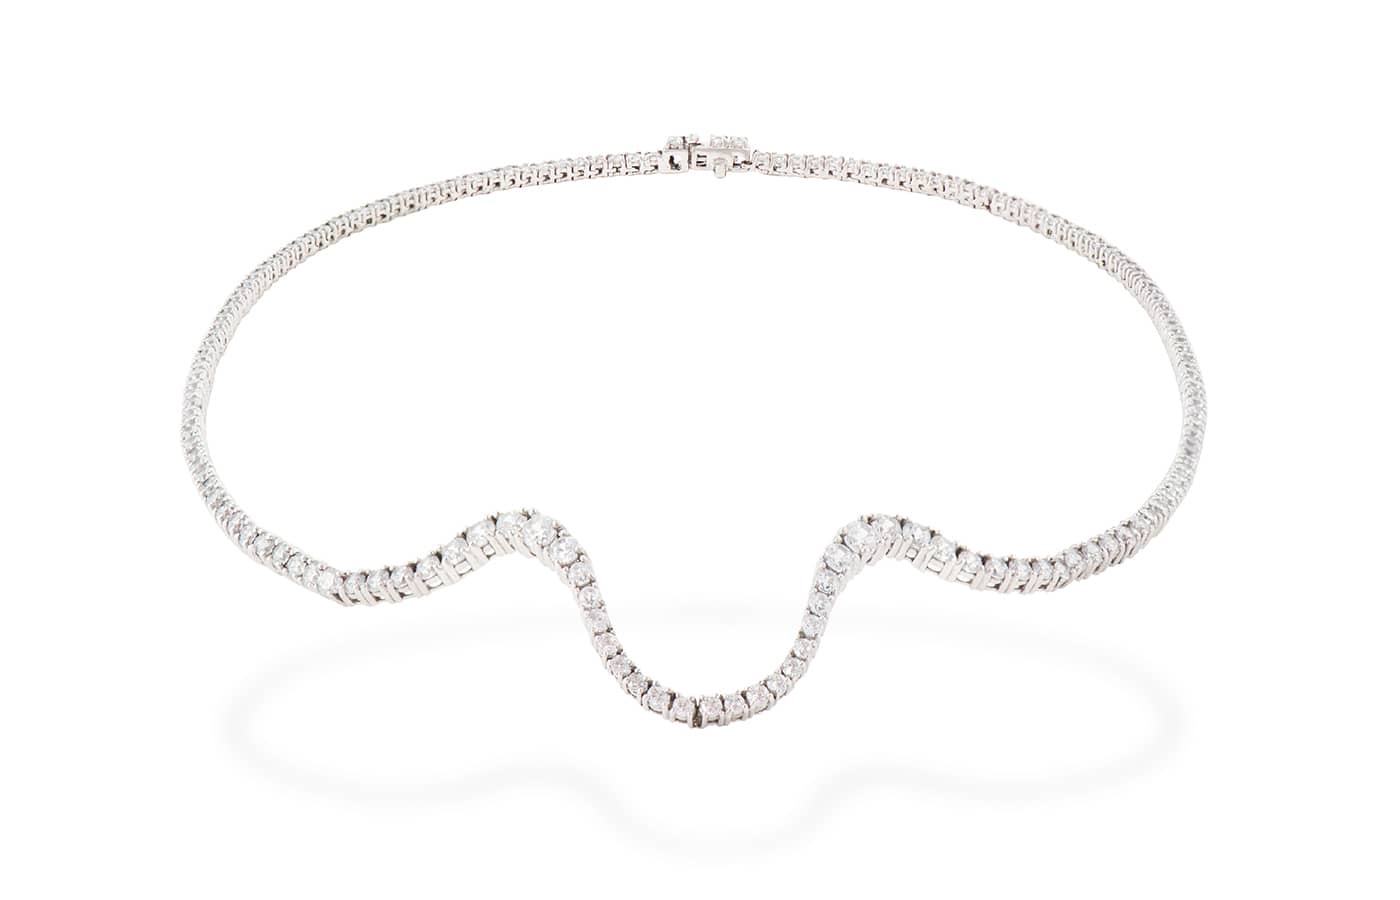 Marie Mas’ Luminous Lines: Sensual Diamond Jewels for Summer